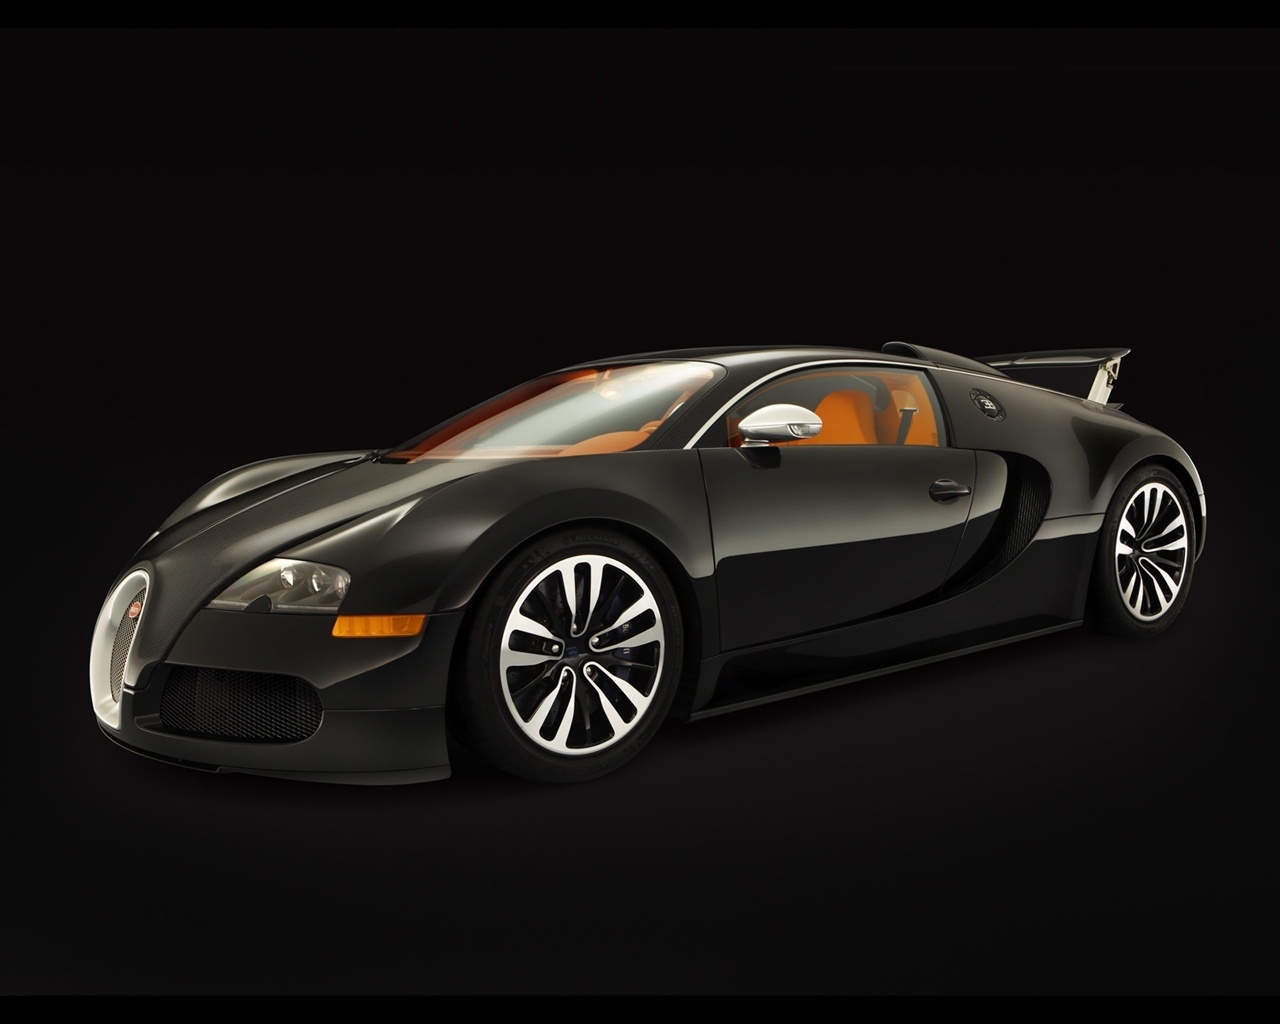 Bugatti Veyron Sang Noir 2008 - Side Angle for 1280 x 1024 resolution